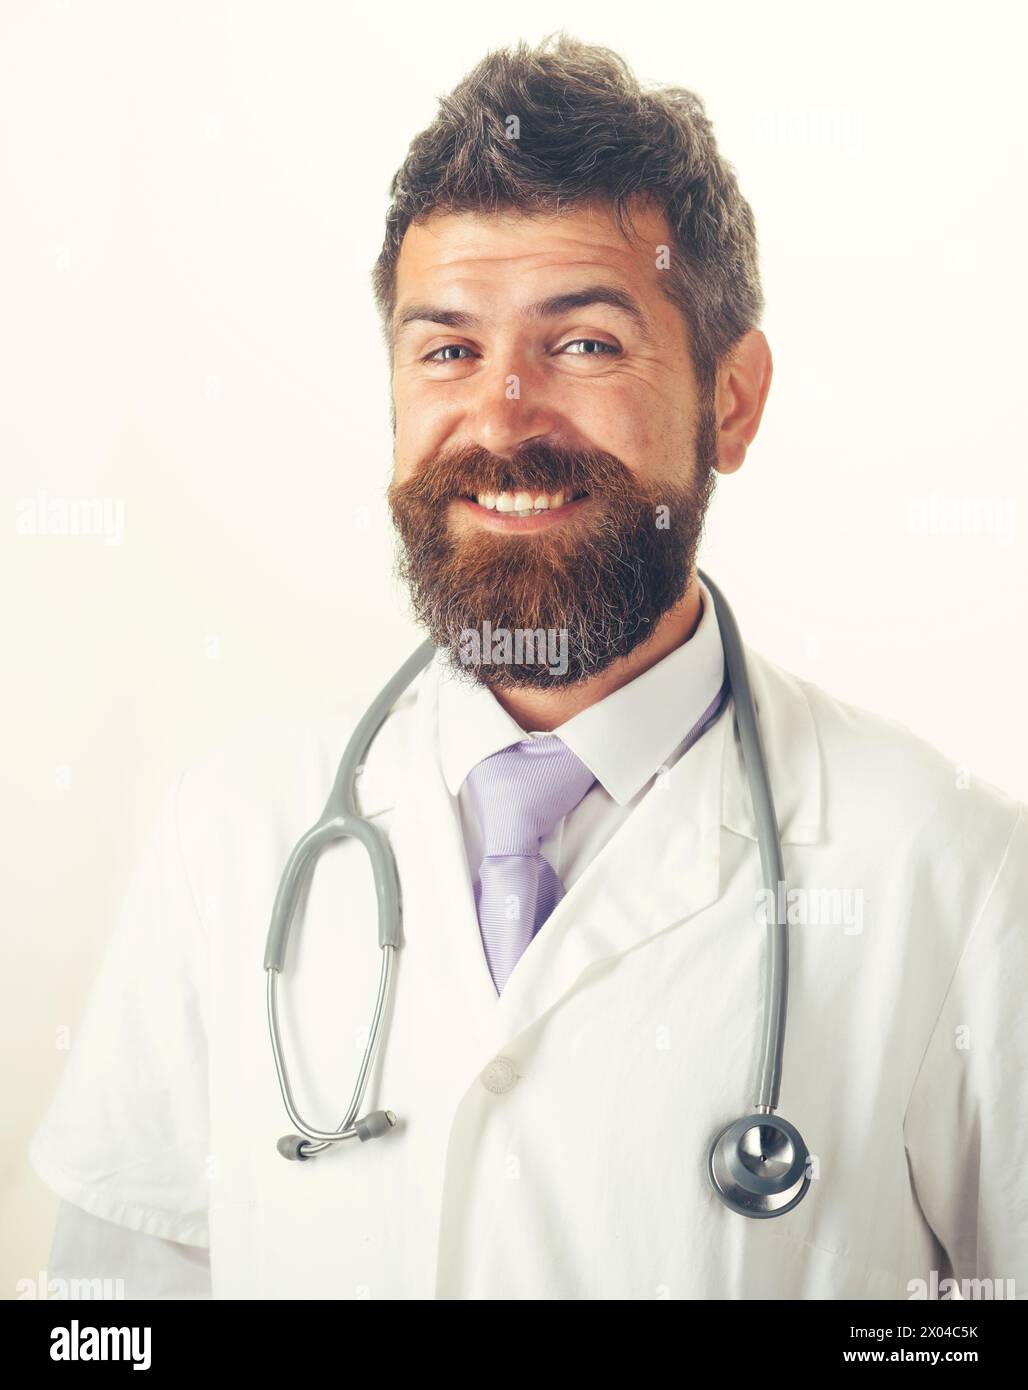 Concetto di assistenza sanitaria, trattamento e personale medico. Ritratto di uomo sorridente medico in abito medico con stetoscopio sul collo. Bella amica barba Foto Stock